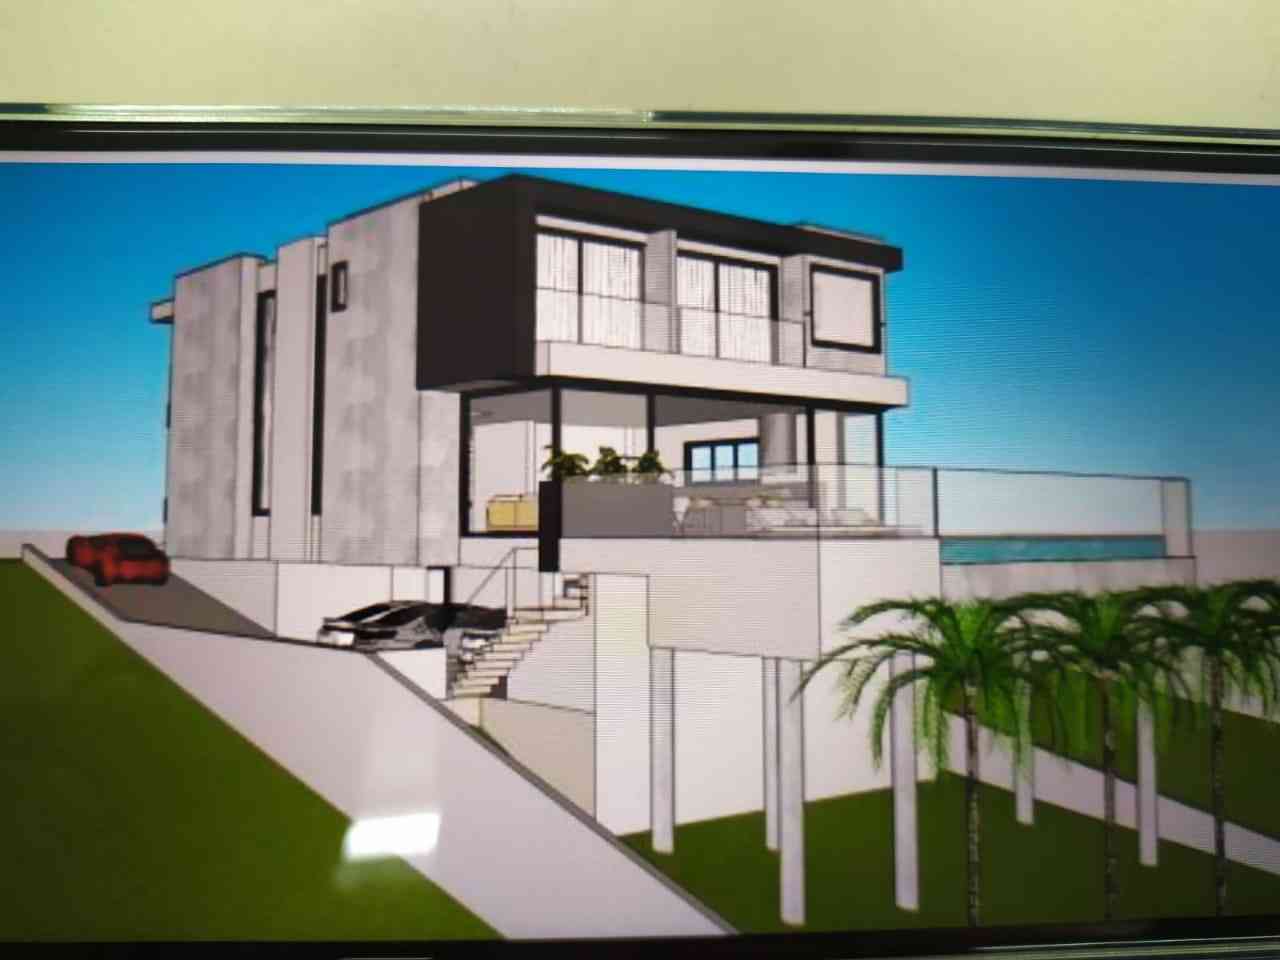 Casa de Condomínio SANTANA DE PARNAIBA  ALPHAVILLE  GÊNESIS 2